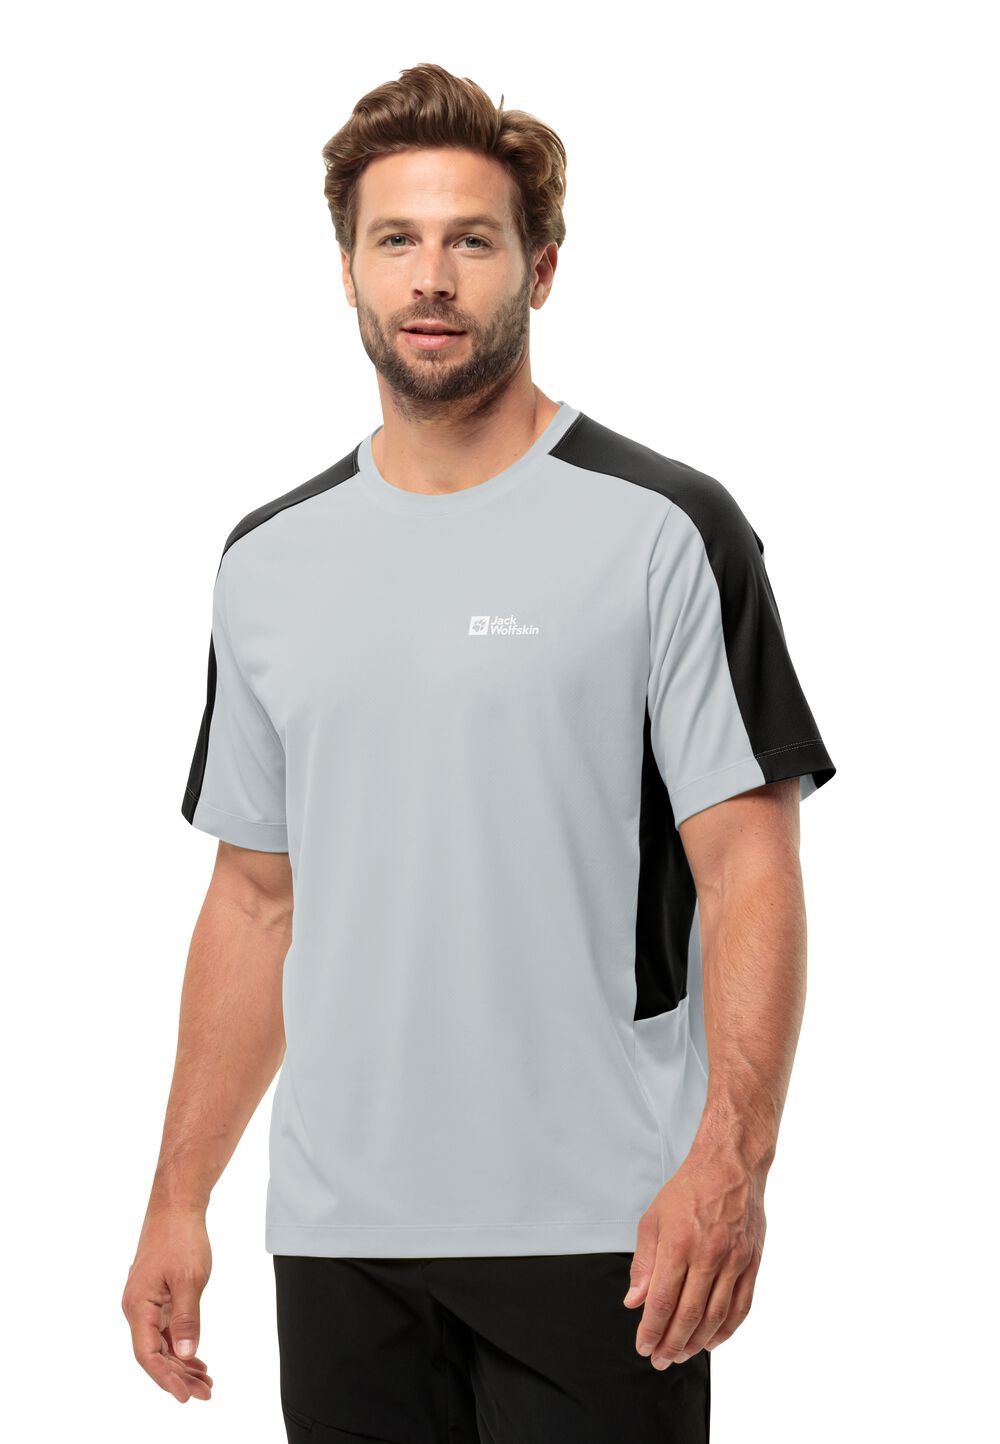 Jack Wolfskin Narrows T-Shirt Men Functioneel shirt Heren S grijs cool grey